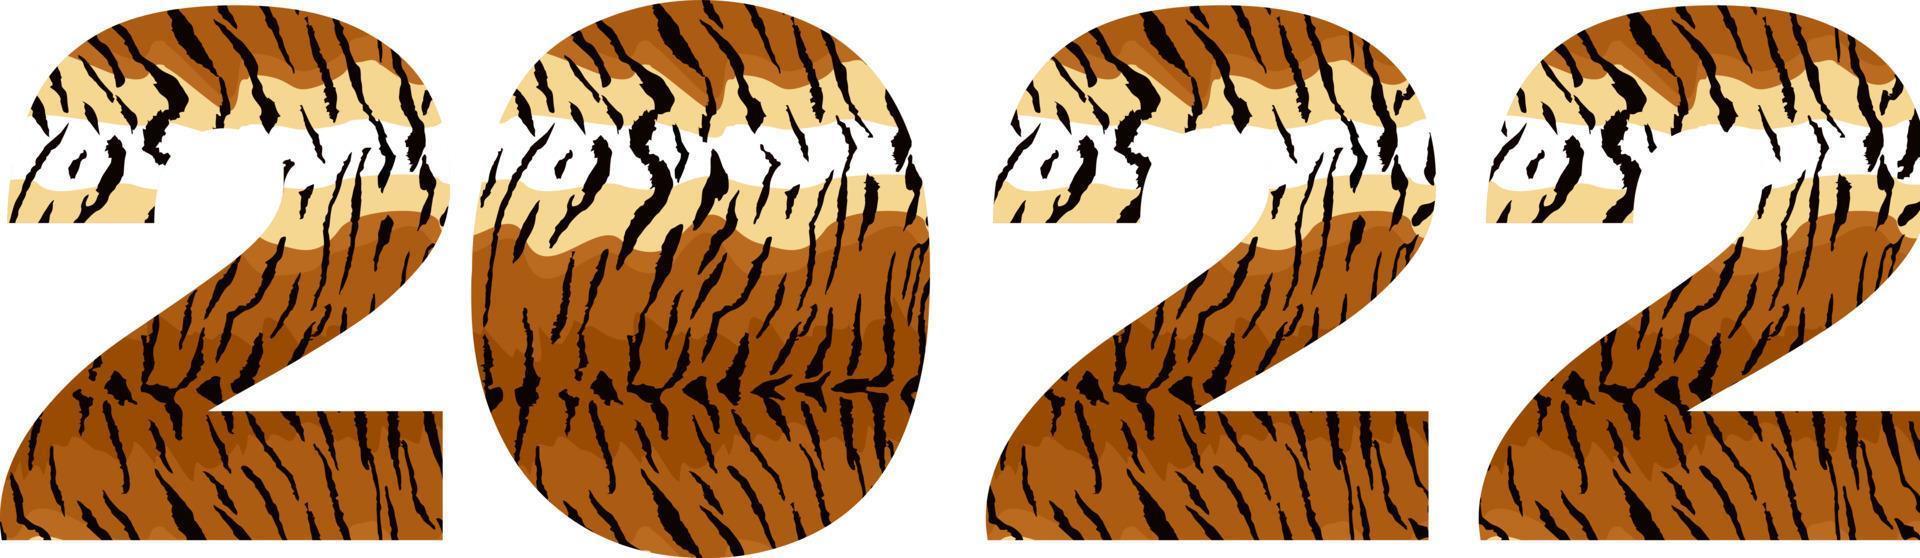 bannière de numéros rayés noirs et orange 2022. joyeux nouvel an chinois 2022 du tigre. rayé 2022. carte de voeux festive du nouvel an vecteur